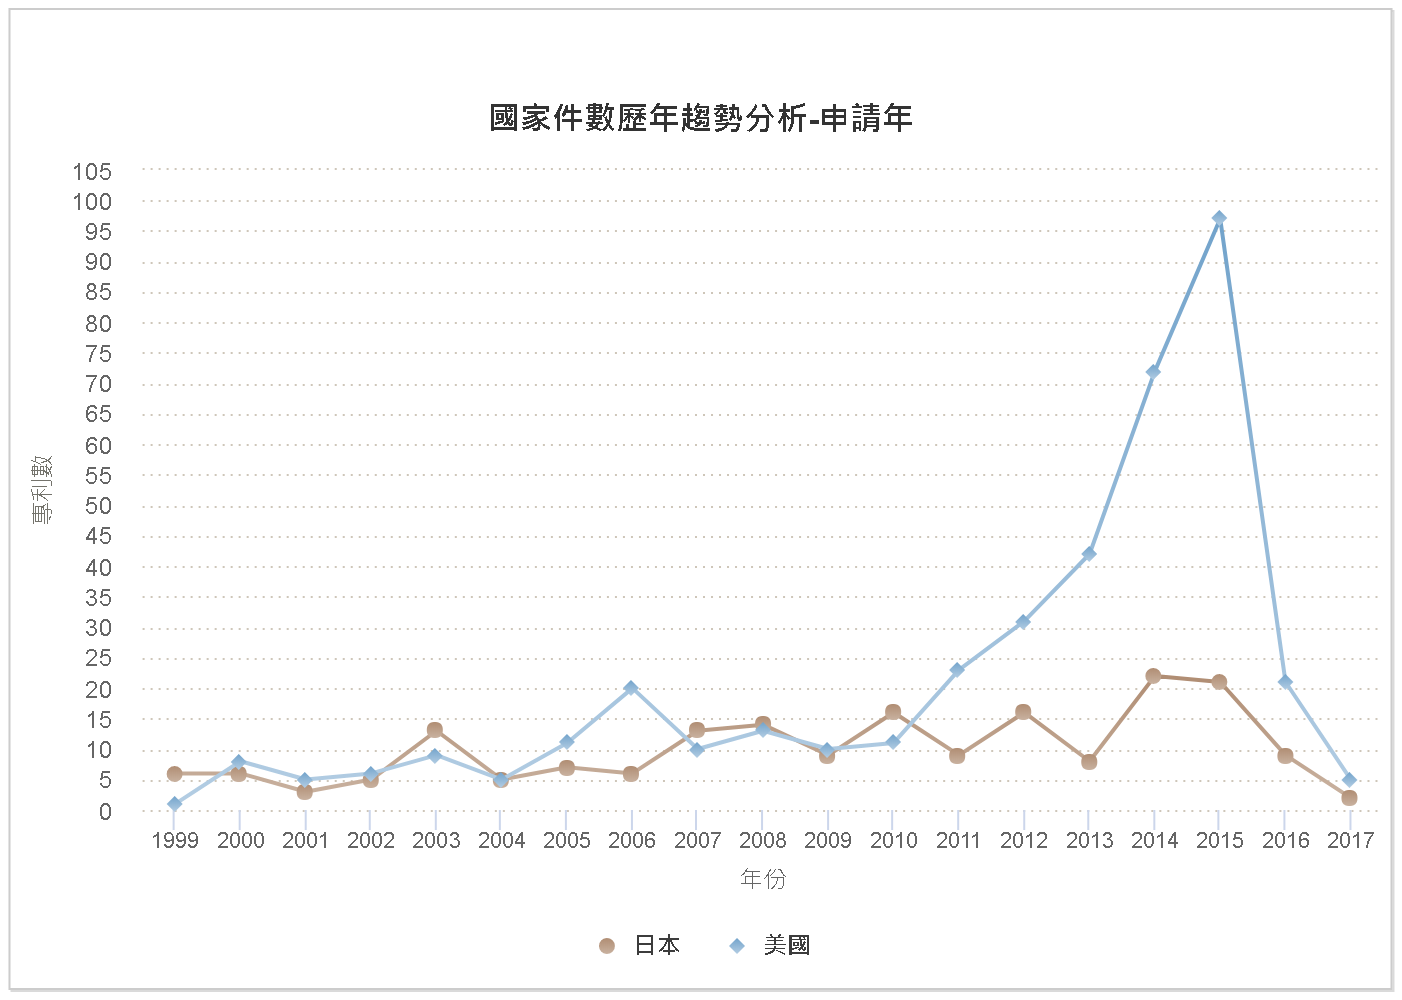 國家件數歷年趨勢分析圖–中國大陸(日本、美國)